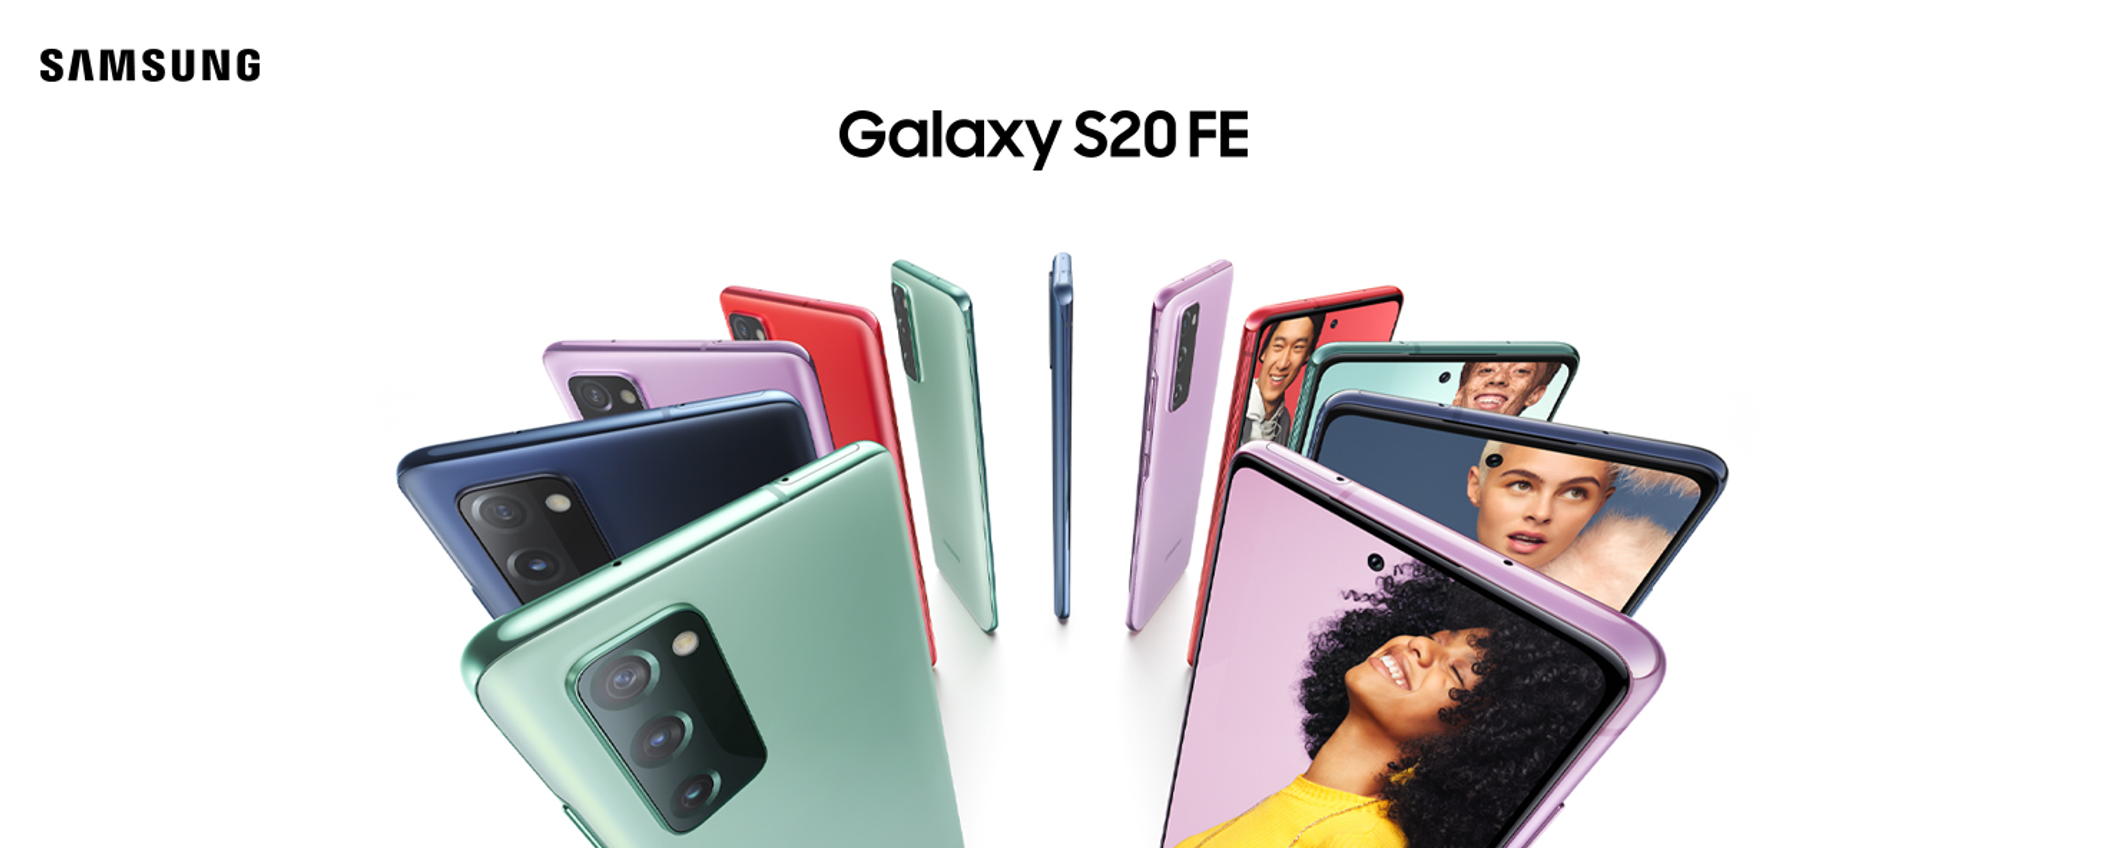 Samsung Galaxy S20 FE 5G a meno di 350€ è ancora un best buy